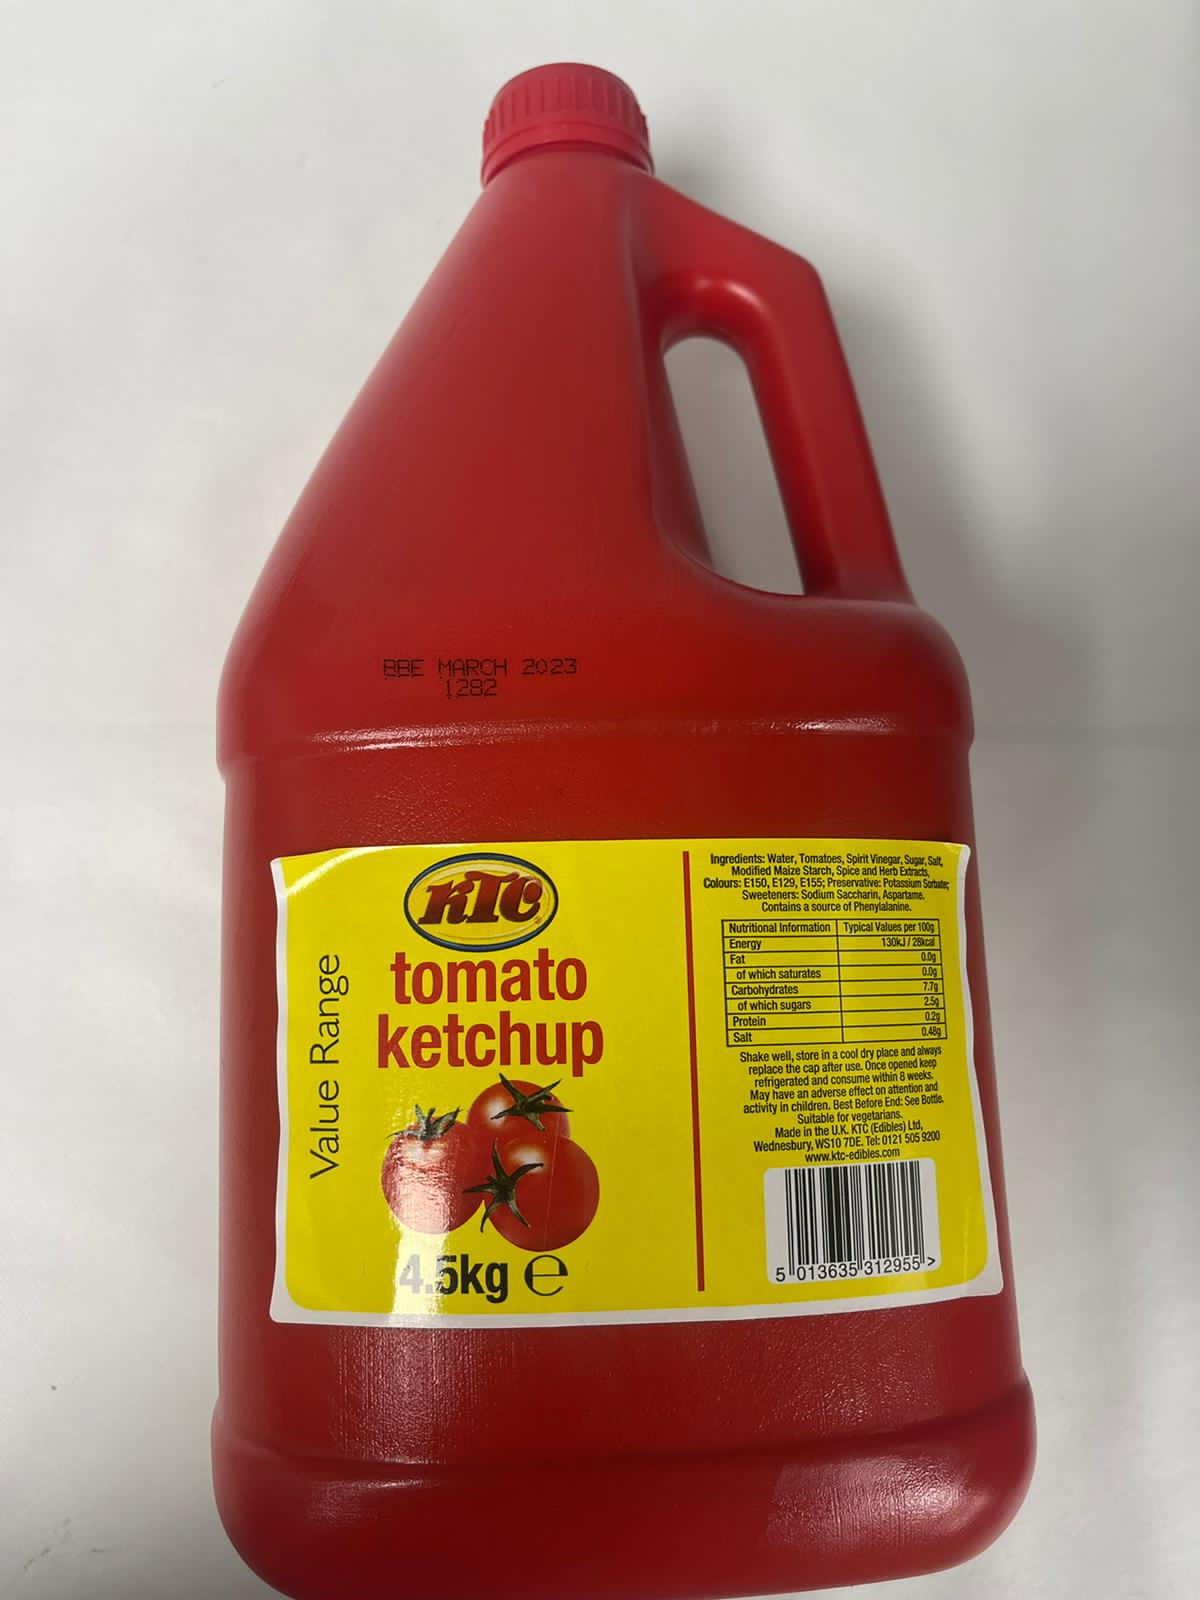 Ktc Tomato Ketchup 4.5kg